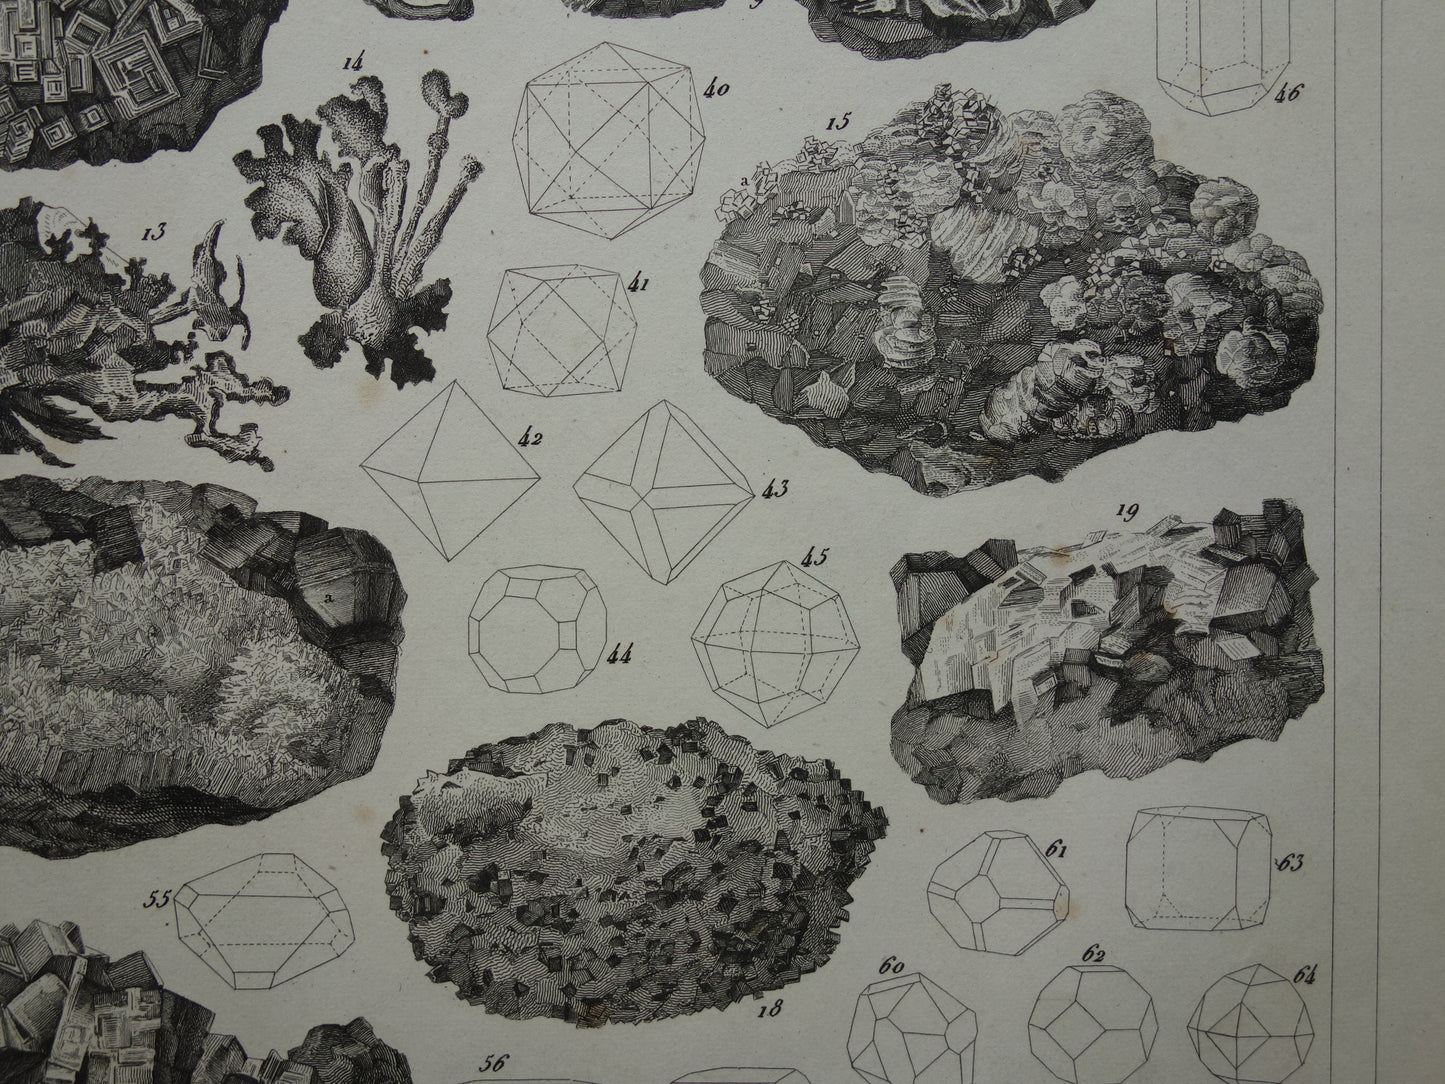 Oude prent over edelstenen en mineralen uit 1849 originele antieke print kristallen kristalstructuren edelsteen vormen vintage illustratie